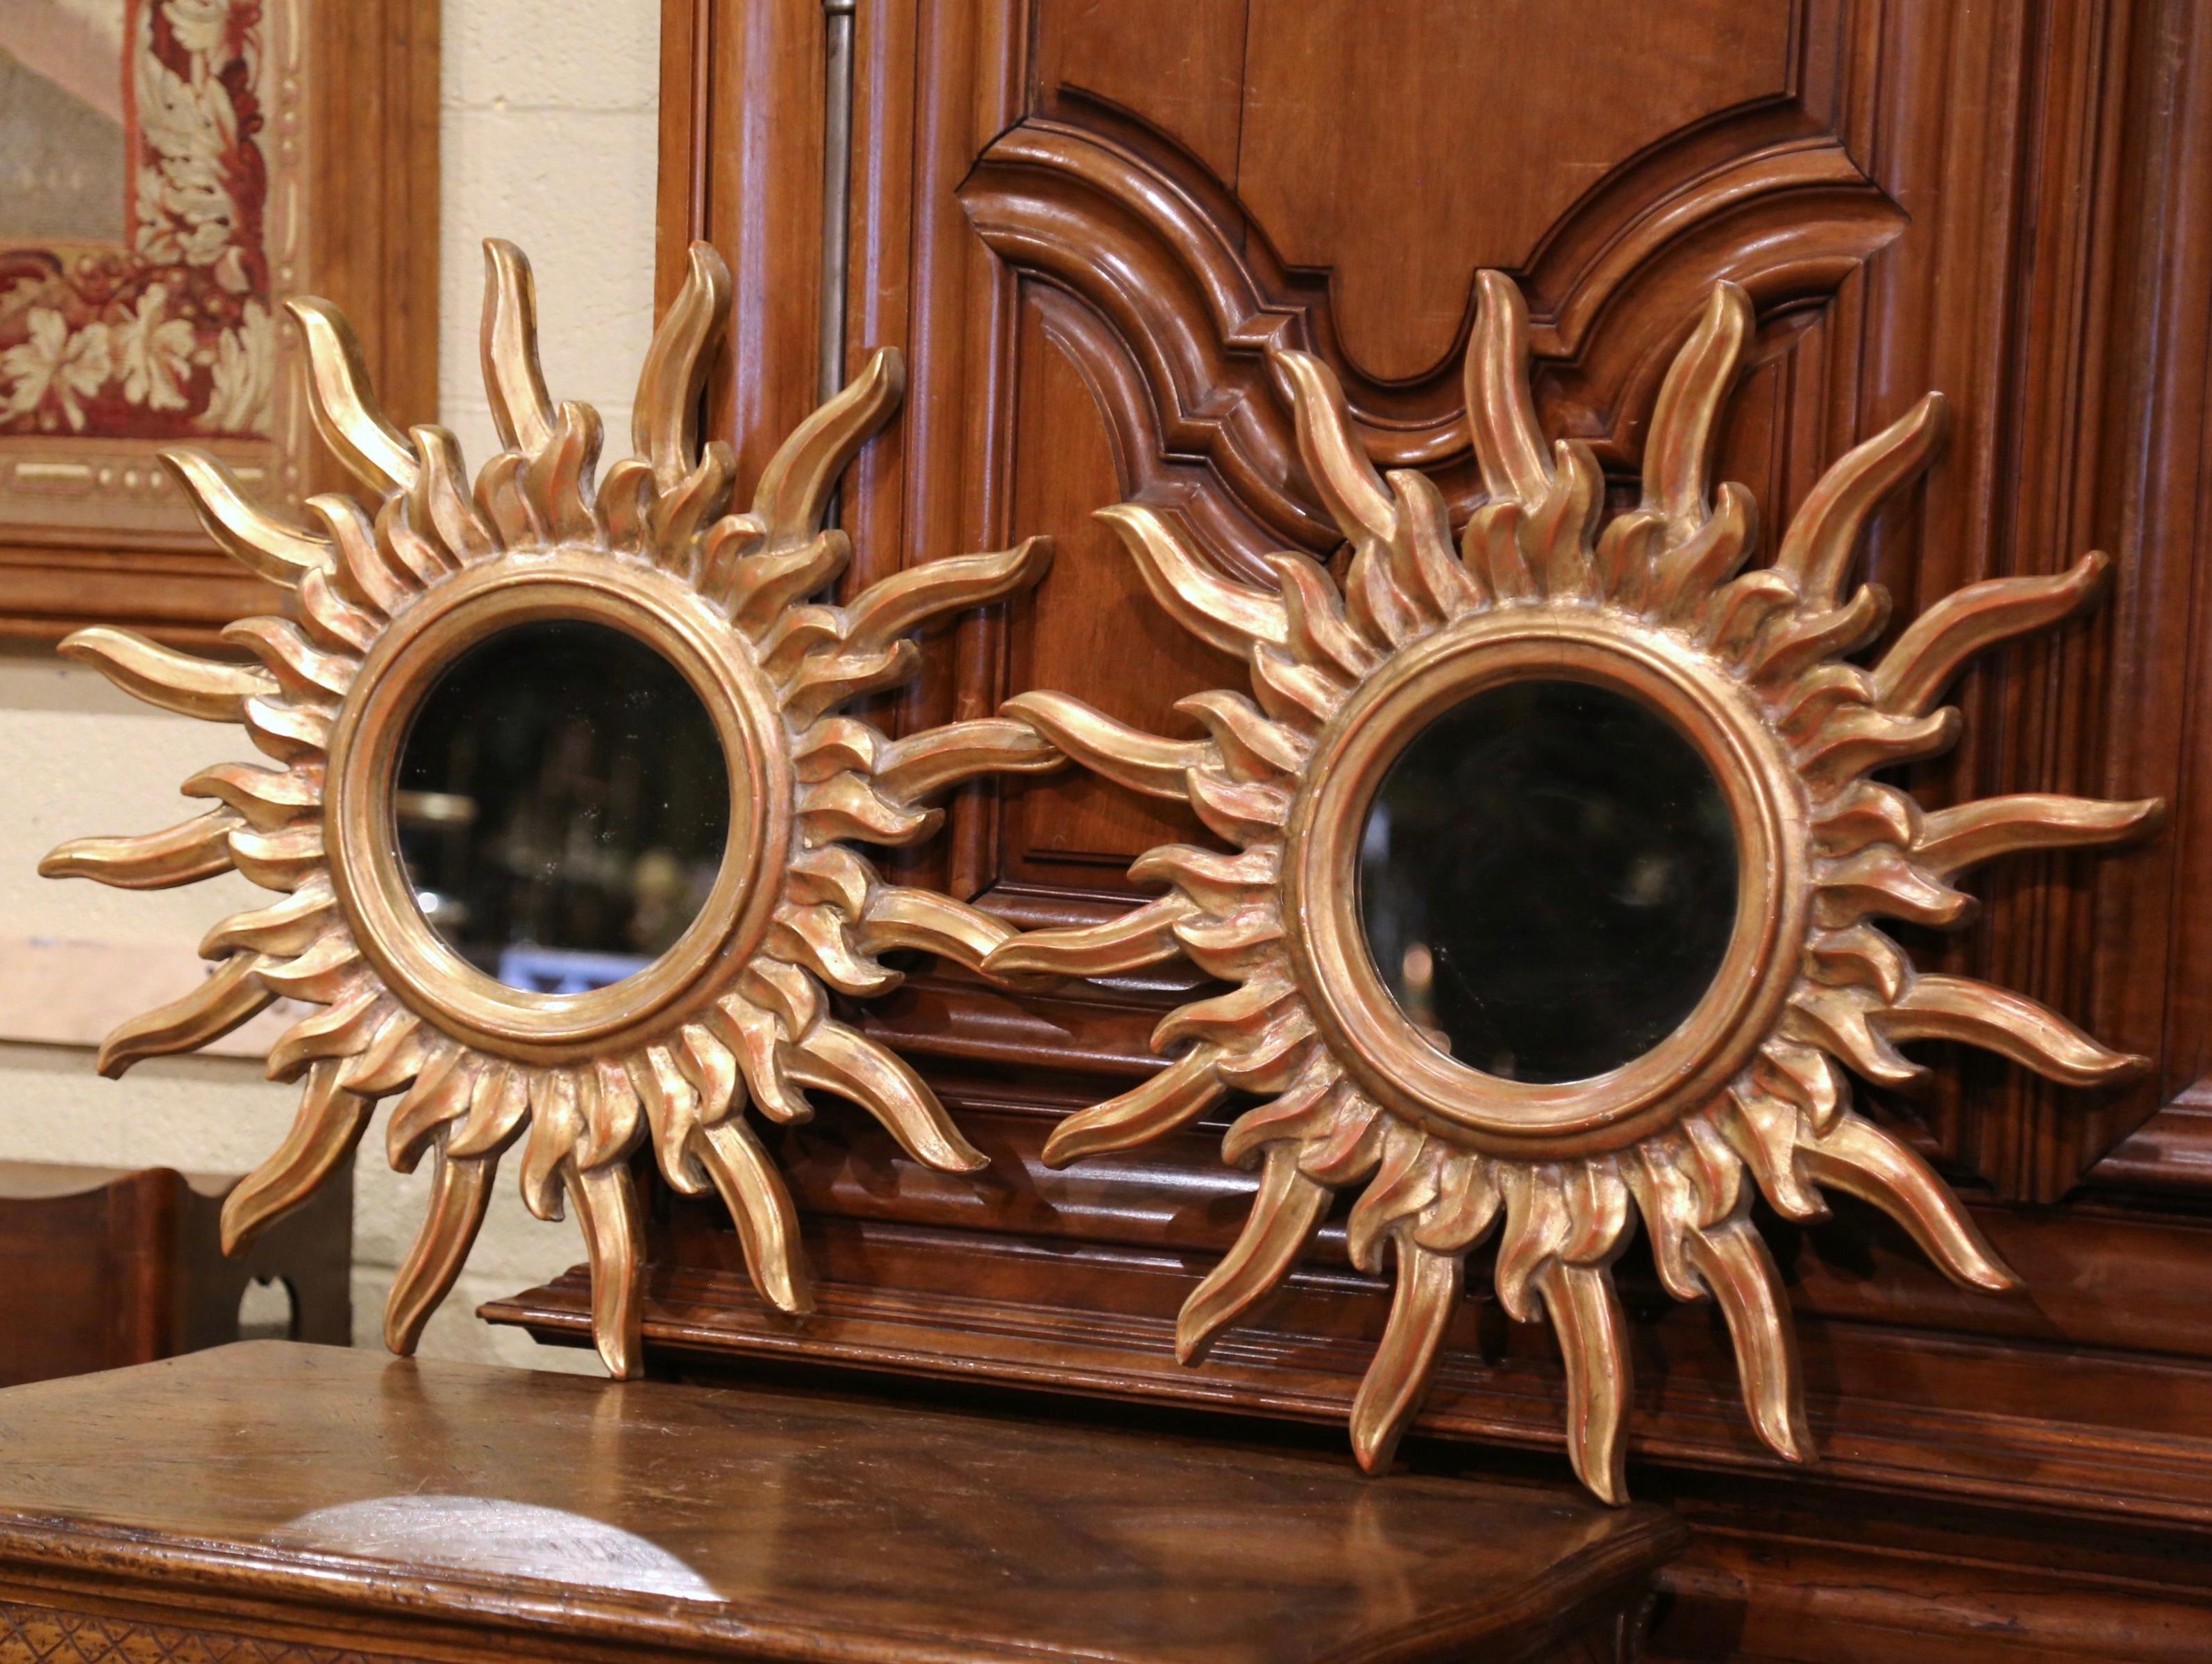 Verleihen Sie Ihrem Zuhause einen schönen Glanz mit diesem Paar auffälliger Sonnenspiegel aus Frankreich. Die um 1970 entstandenen Spiegel aus Goldholz haben die klassische Form eines Sonnenstrahls, ein rundes Glas in der Mitte und eine reichhaltige